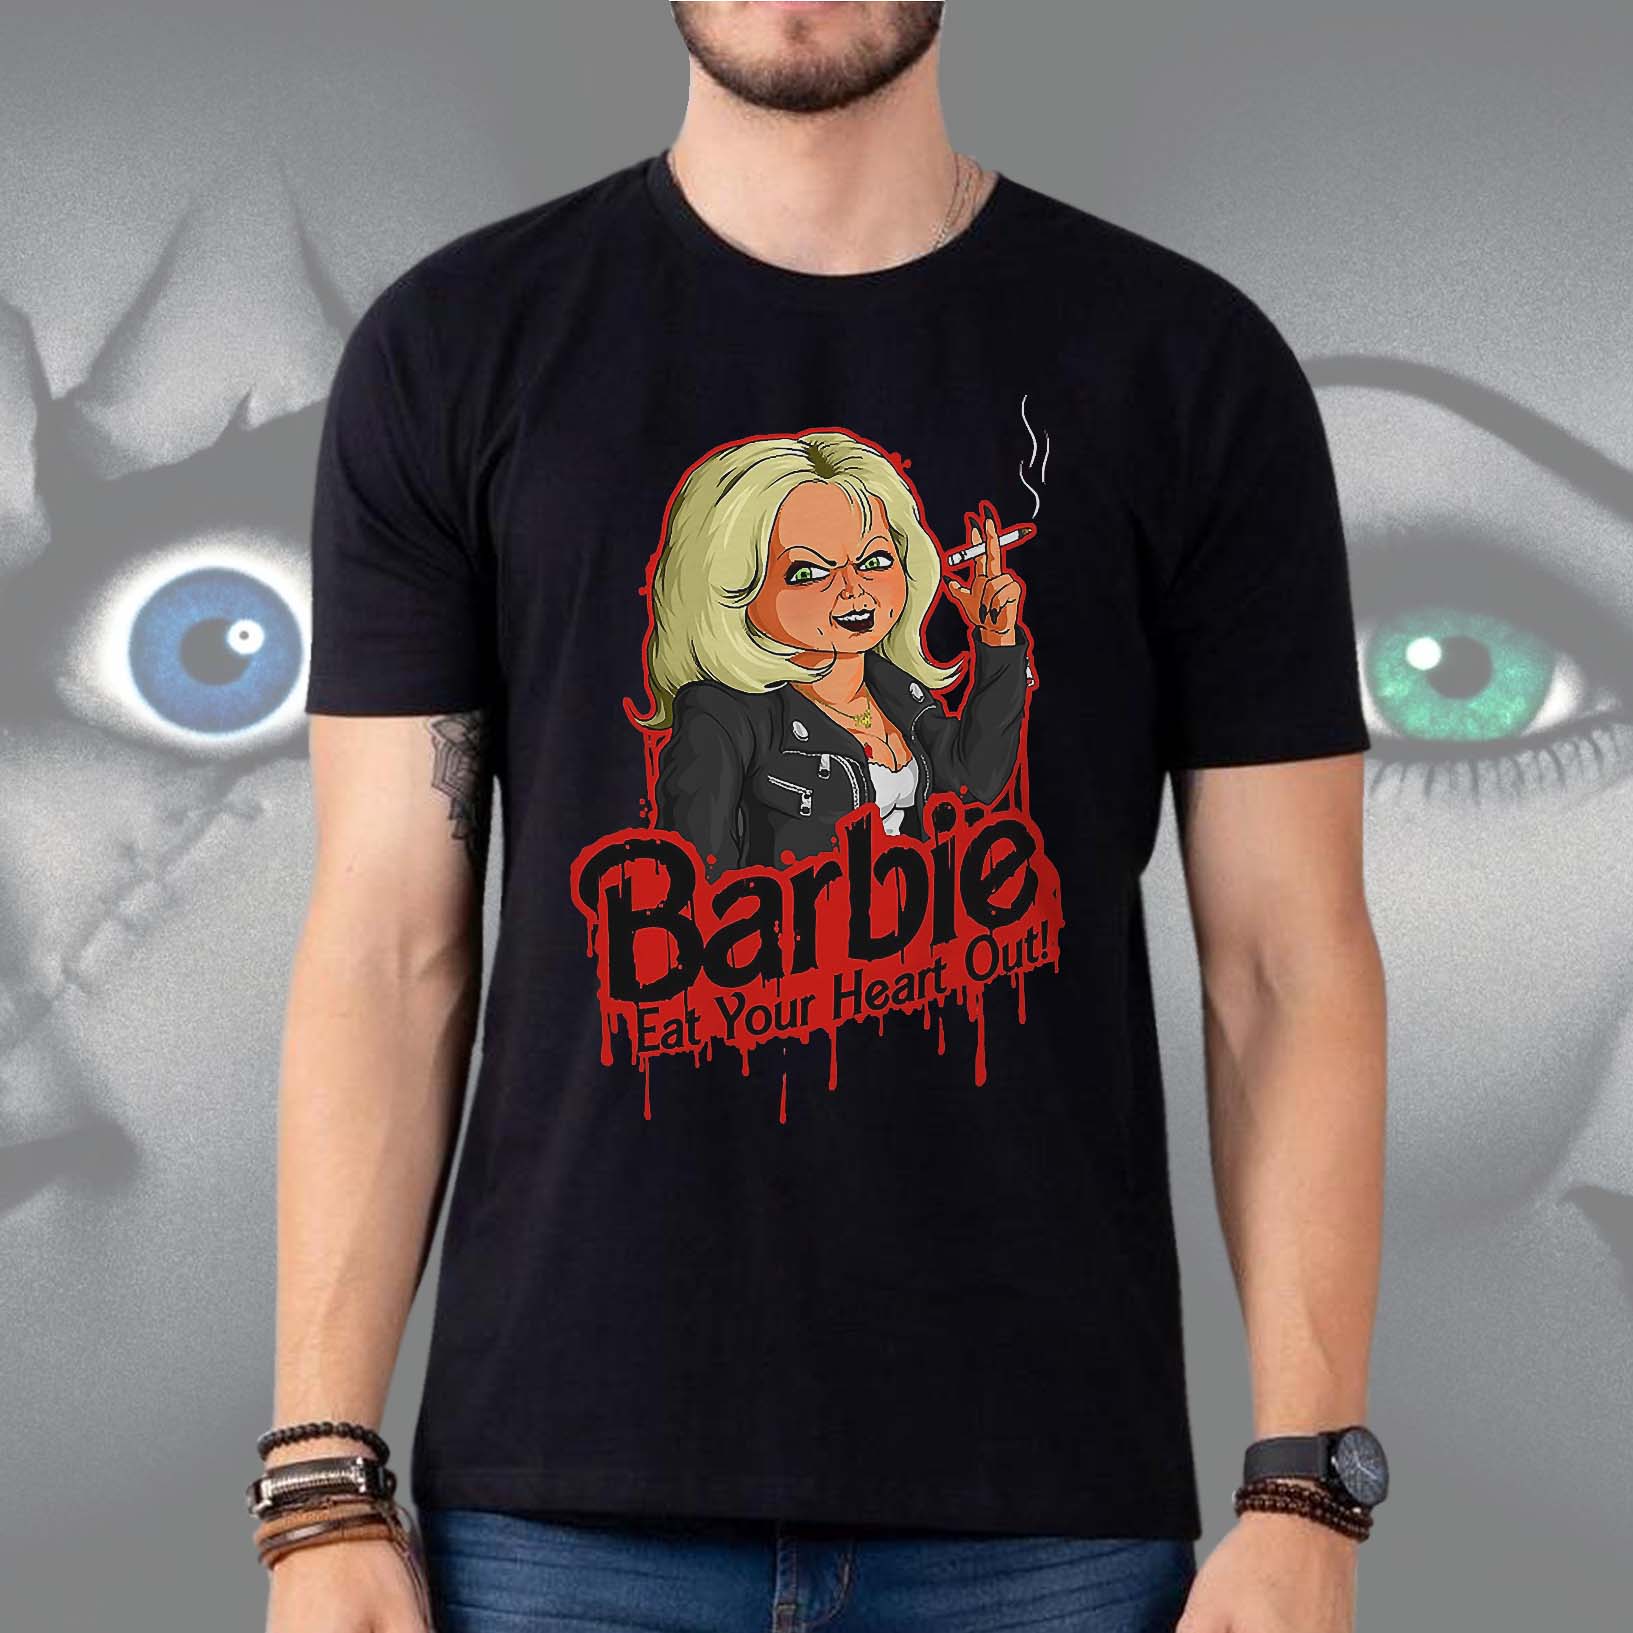 Camiseta Unissex Barbie Come Seu Coração Eat Your Heart Out Tiffany Chucky Brinquedo Assassino (Preta) Camisa Geek - CD